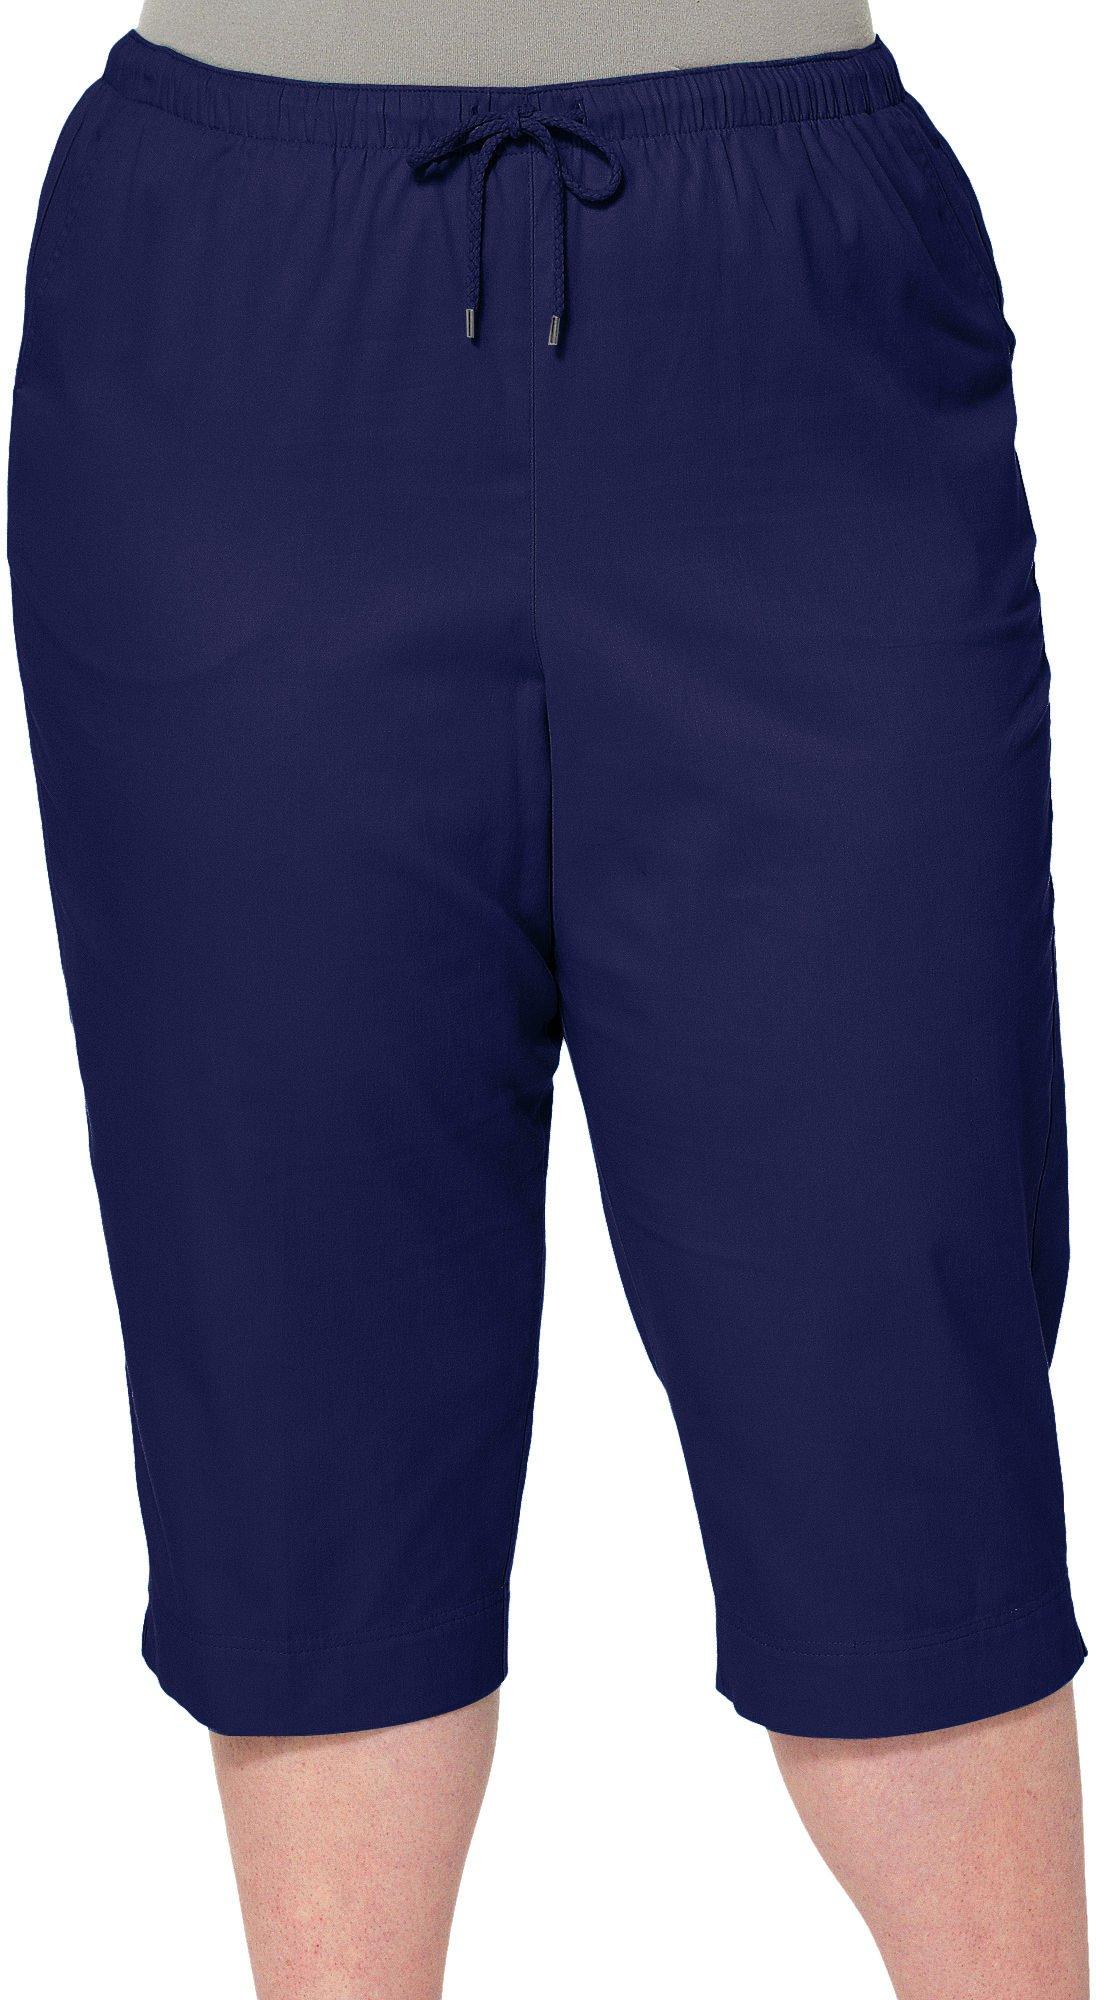 NWT CHRISTOPHER & Banks City Fit Lowest Rise Capri Pants Navy Blue $17.48 -  PicClick